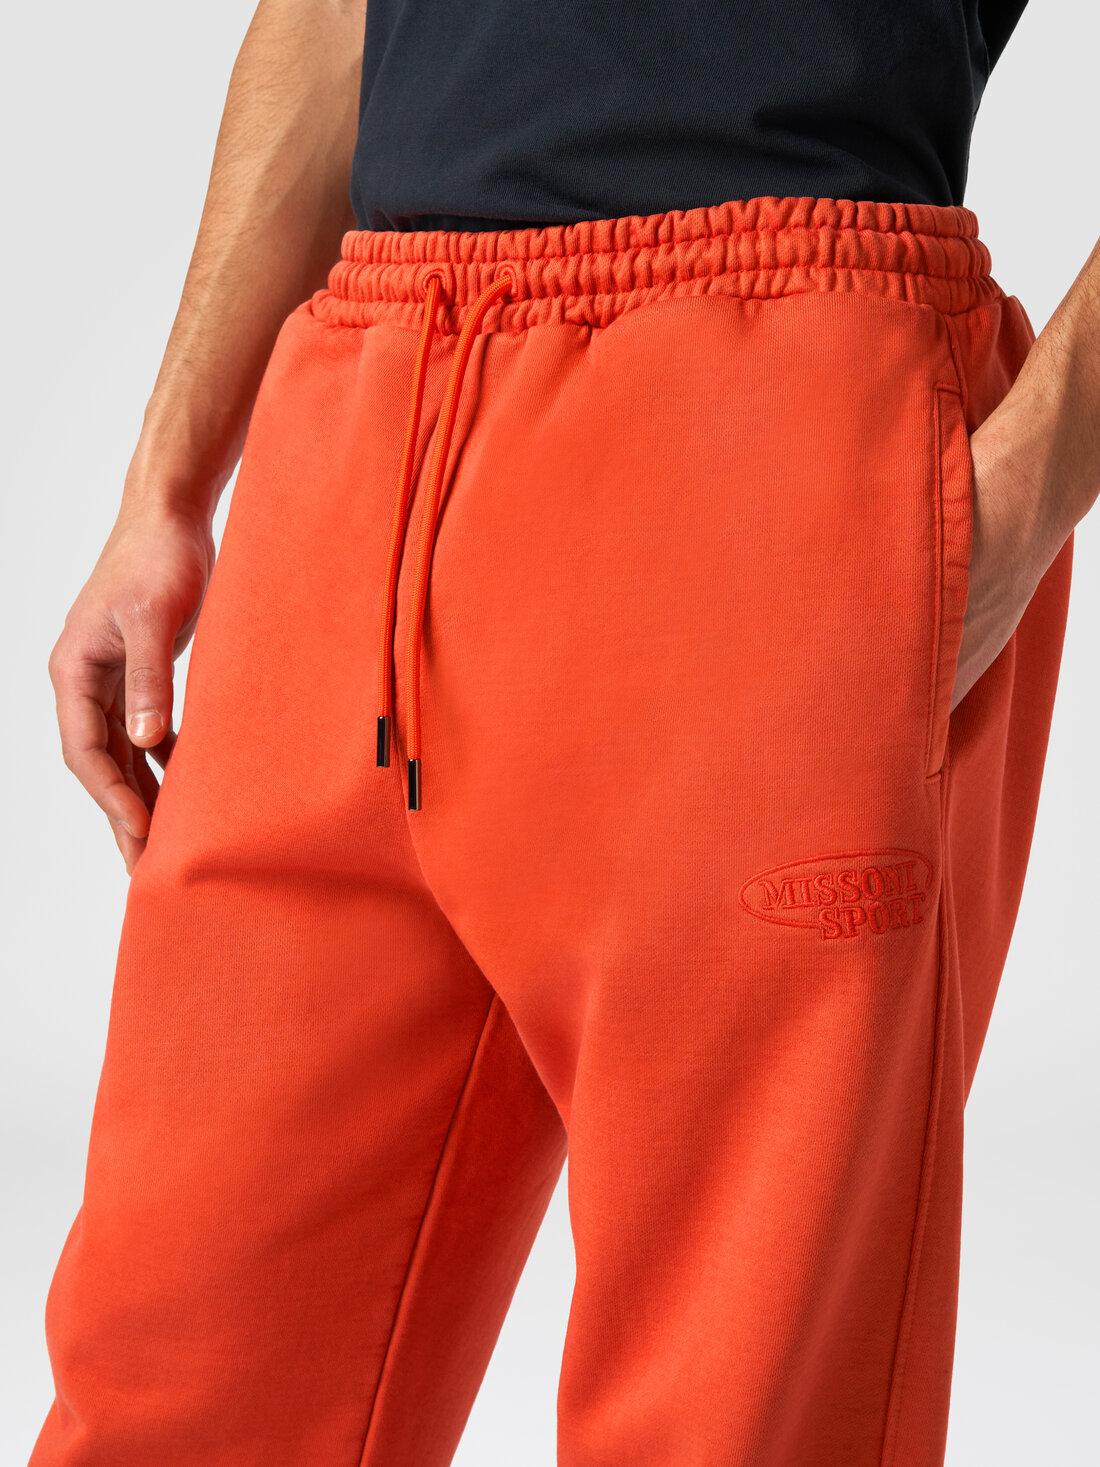 Hose aus Baumwollsweat mit Logo, Orange - TS24SI00BJ00H0S207S - 4